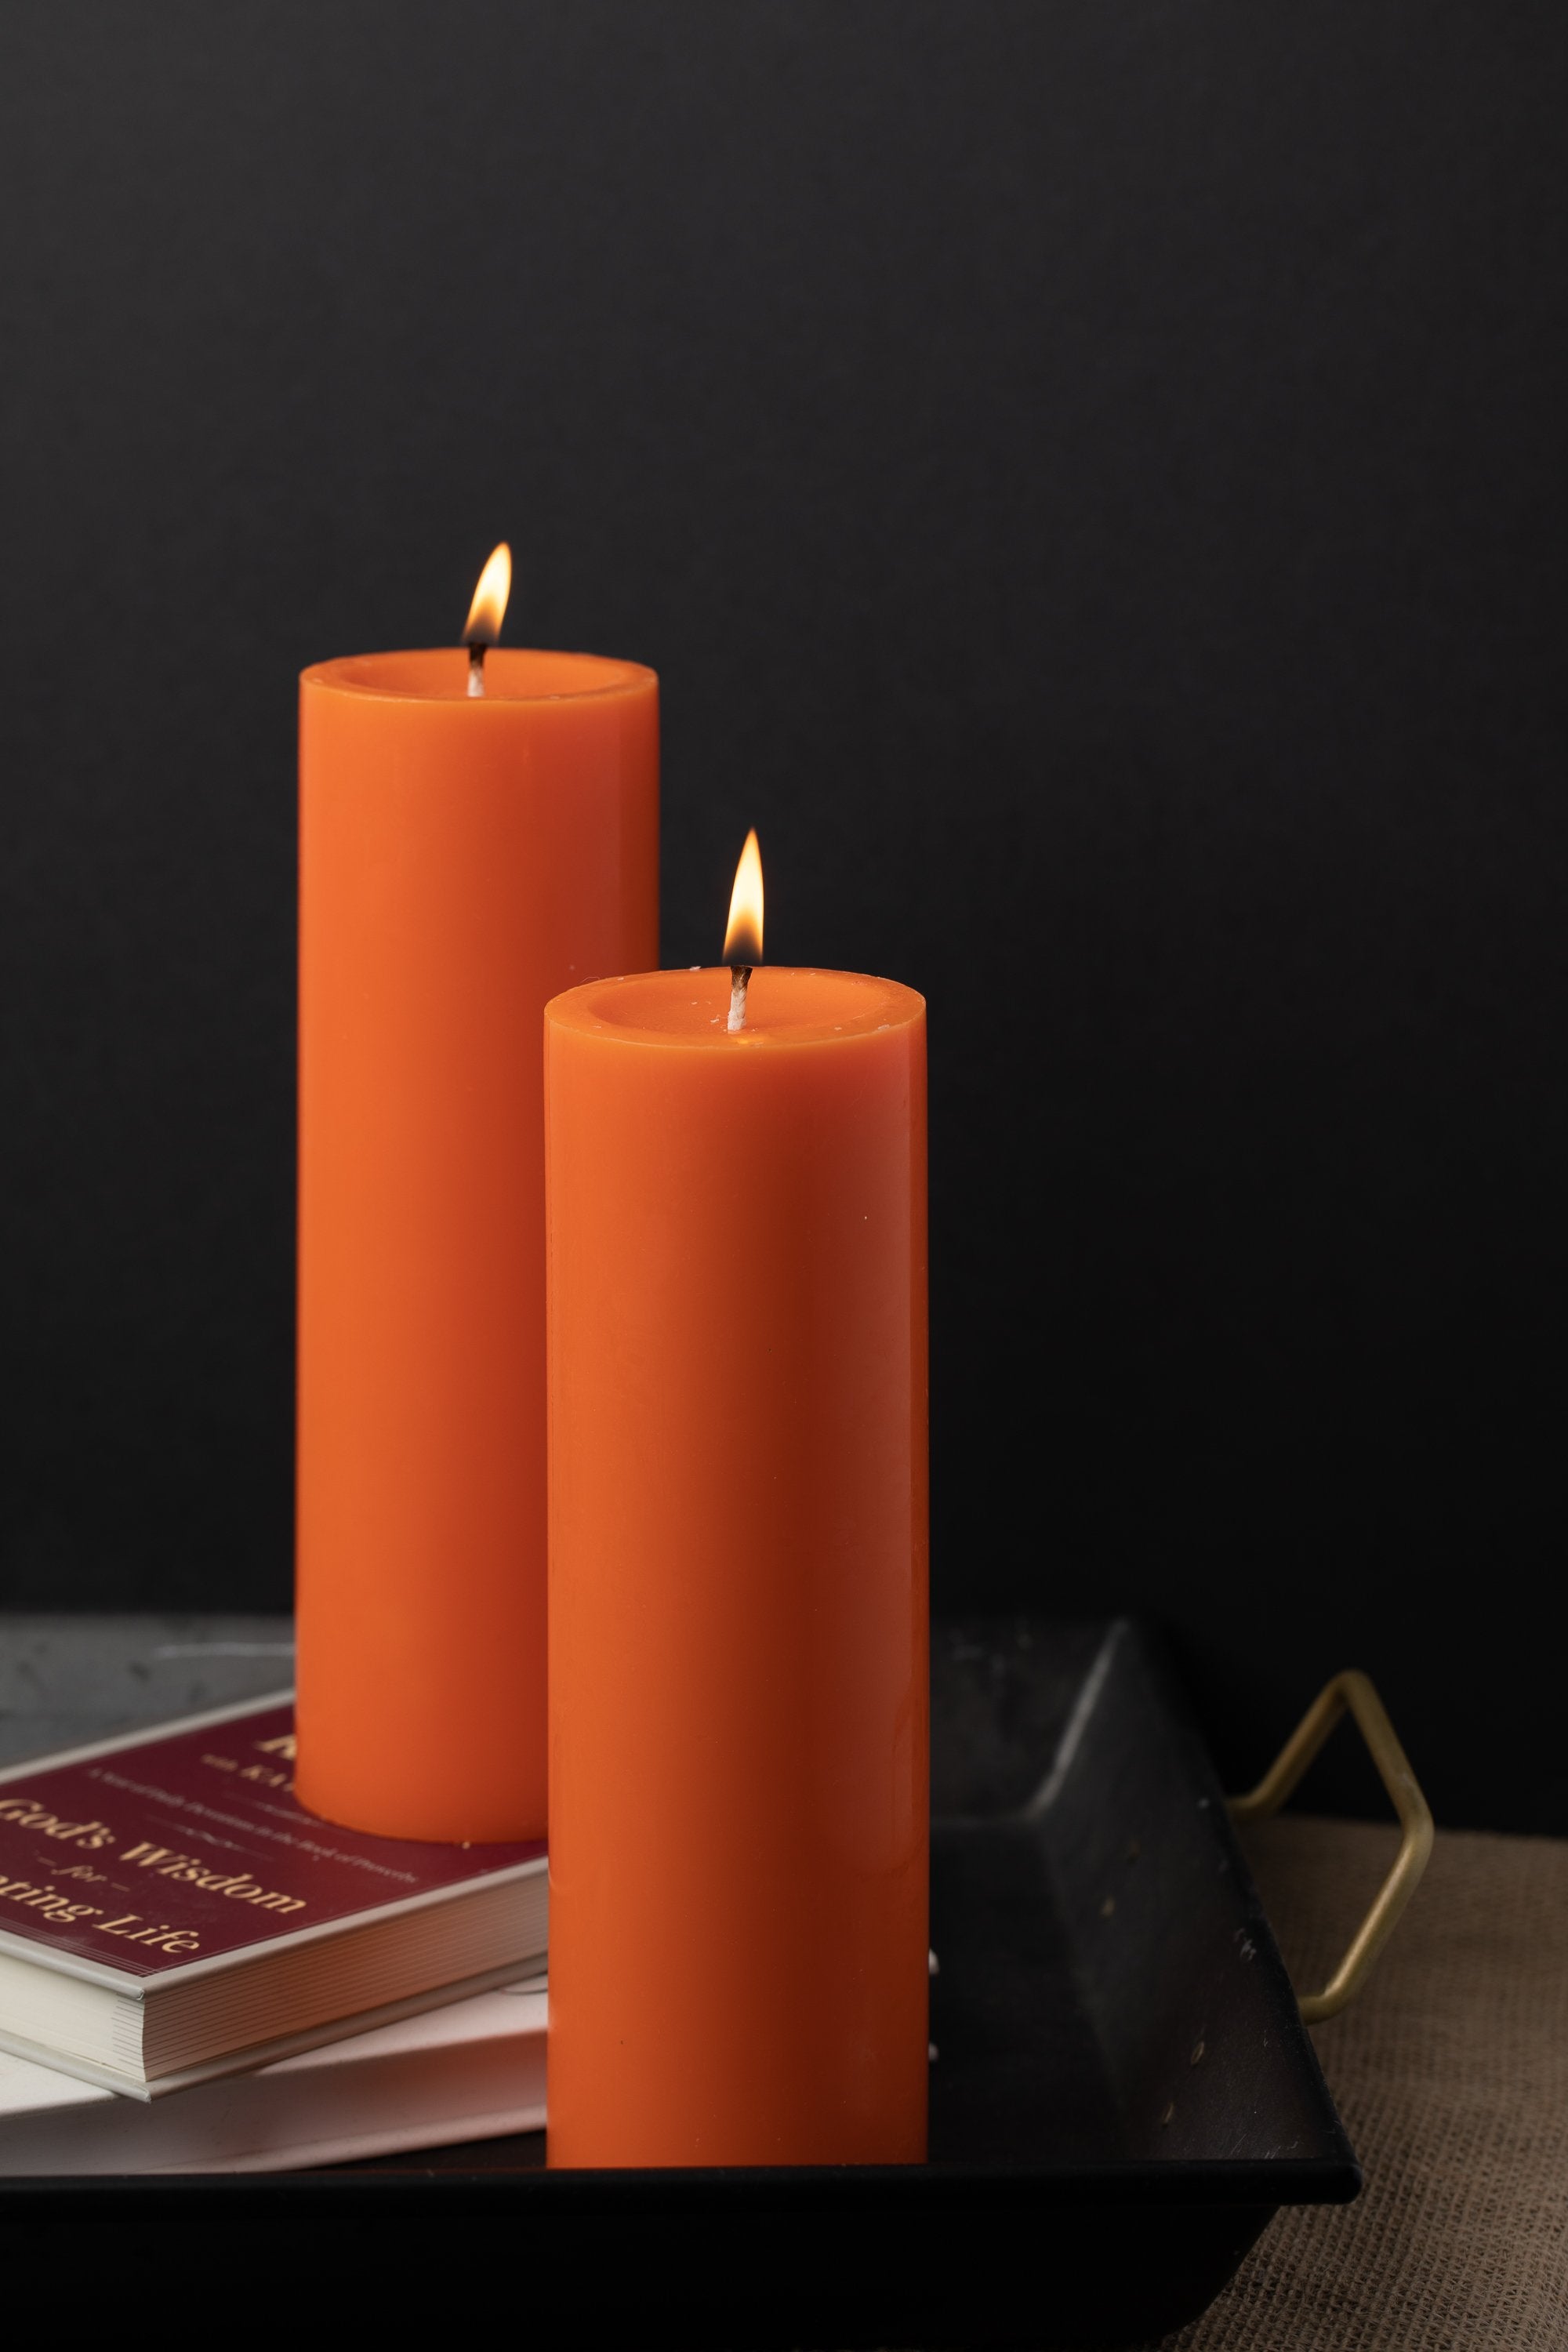 3x4 Beeswax Pillar Candle + Reviews